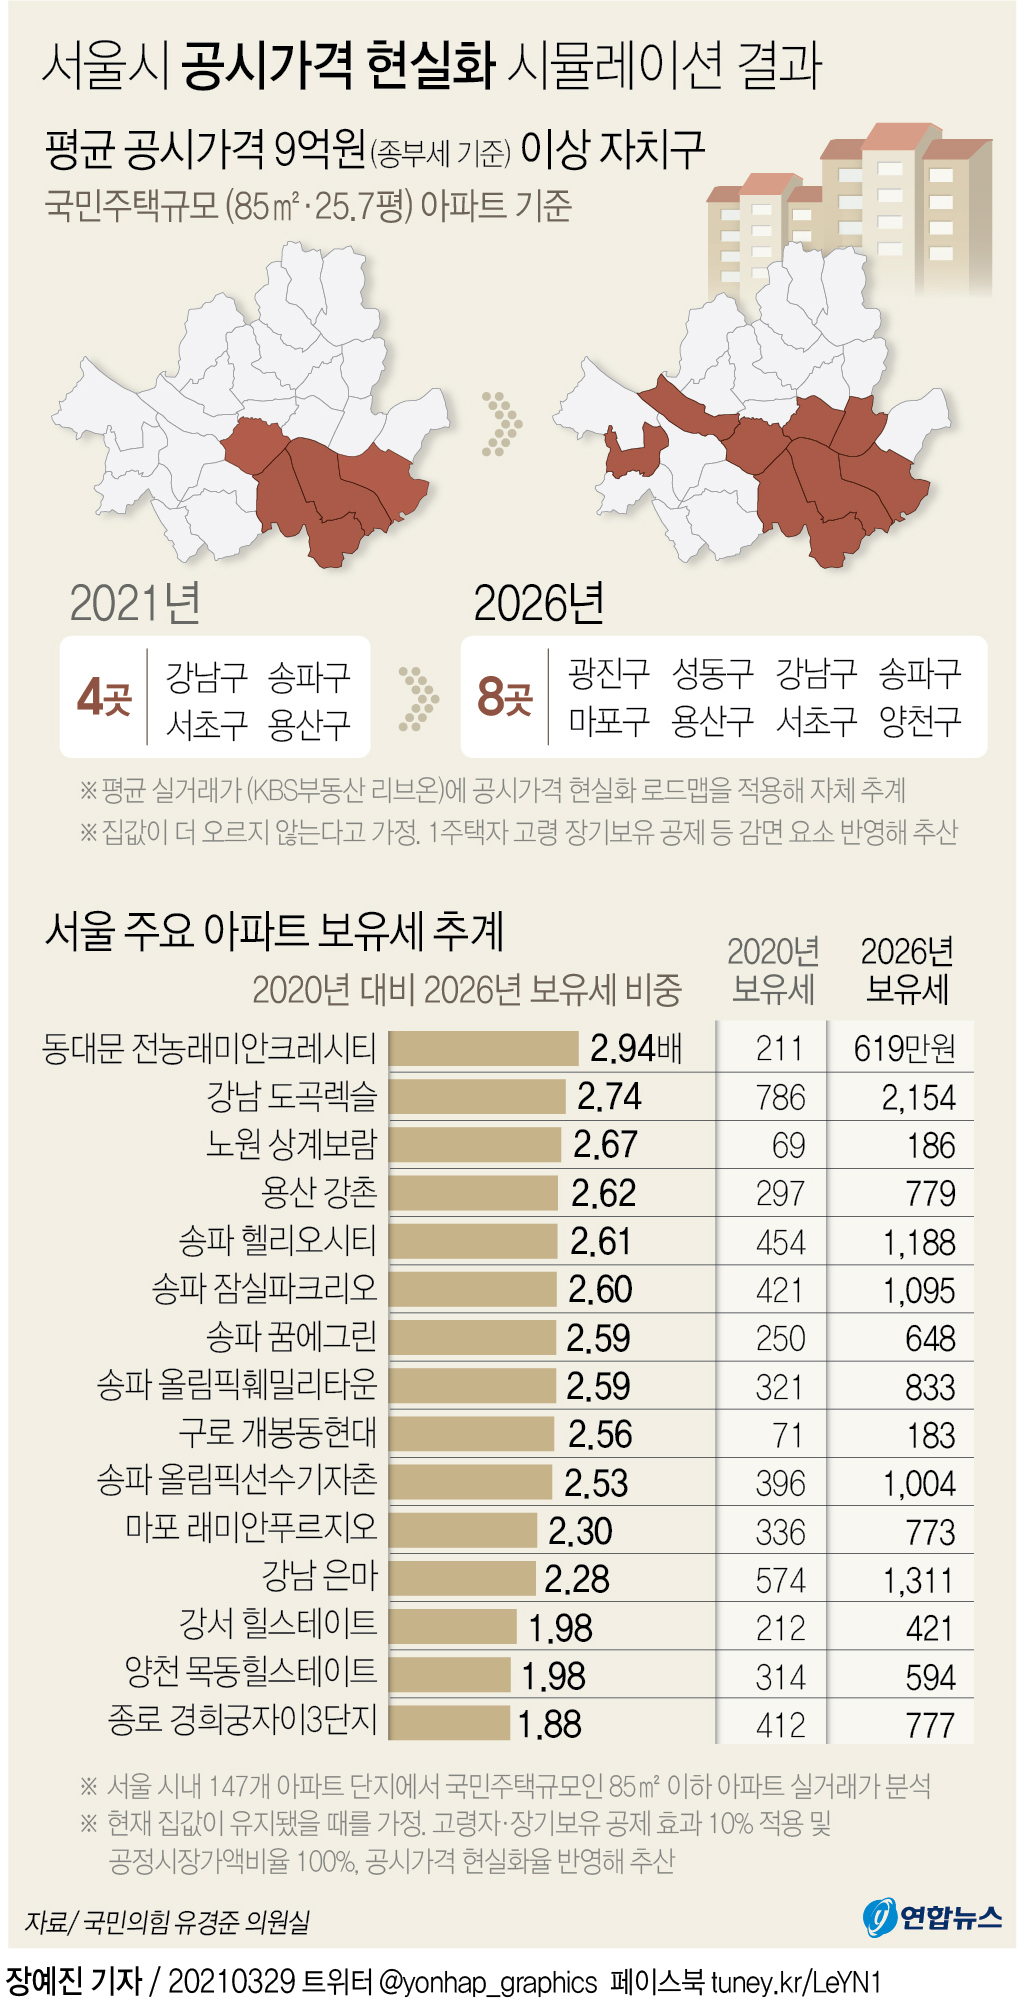 [그래픽] 서울시 공시가격 현실화 시뮬레이션 결과